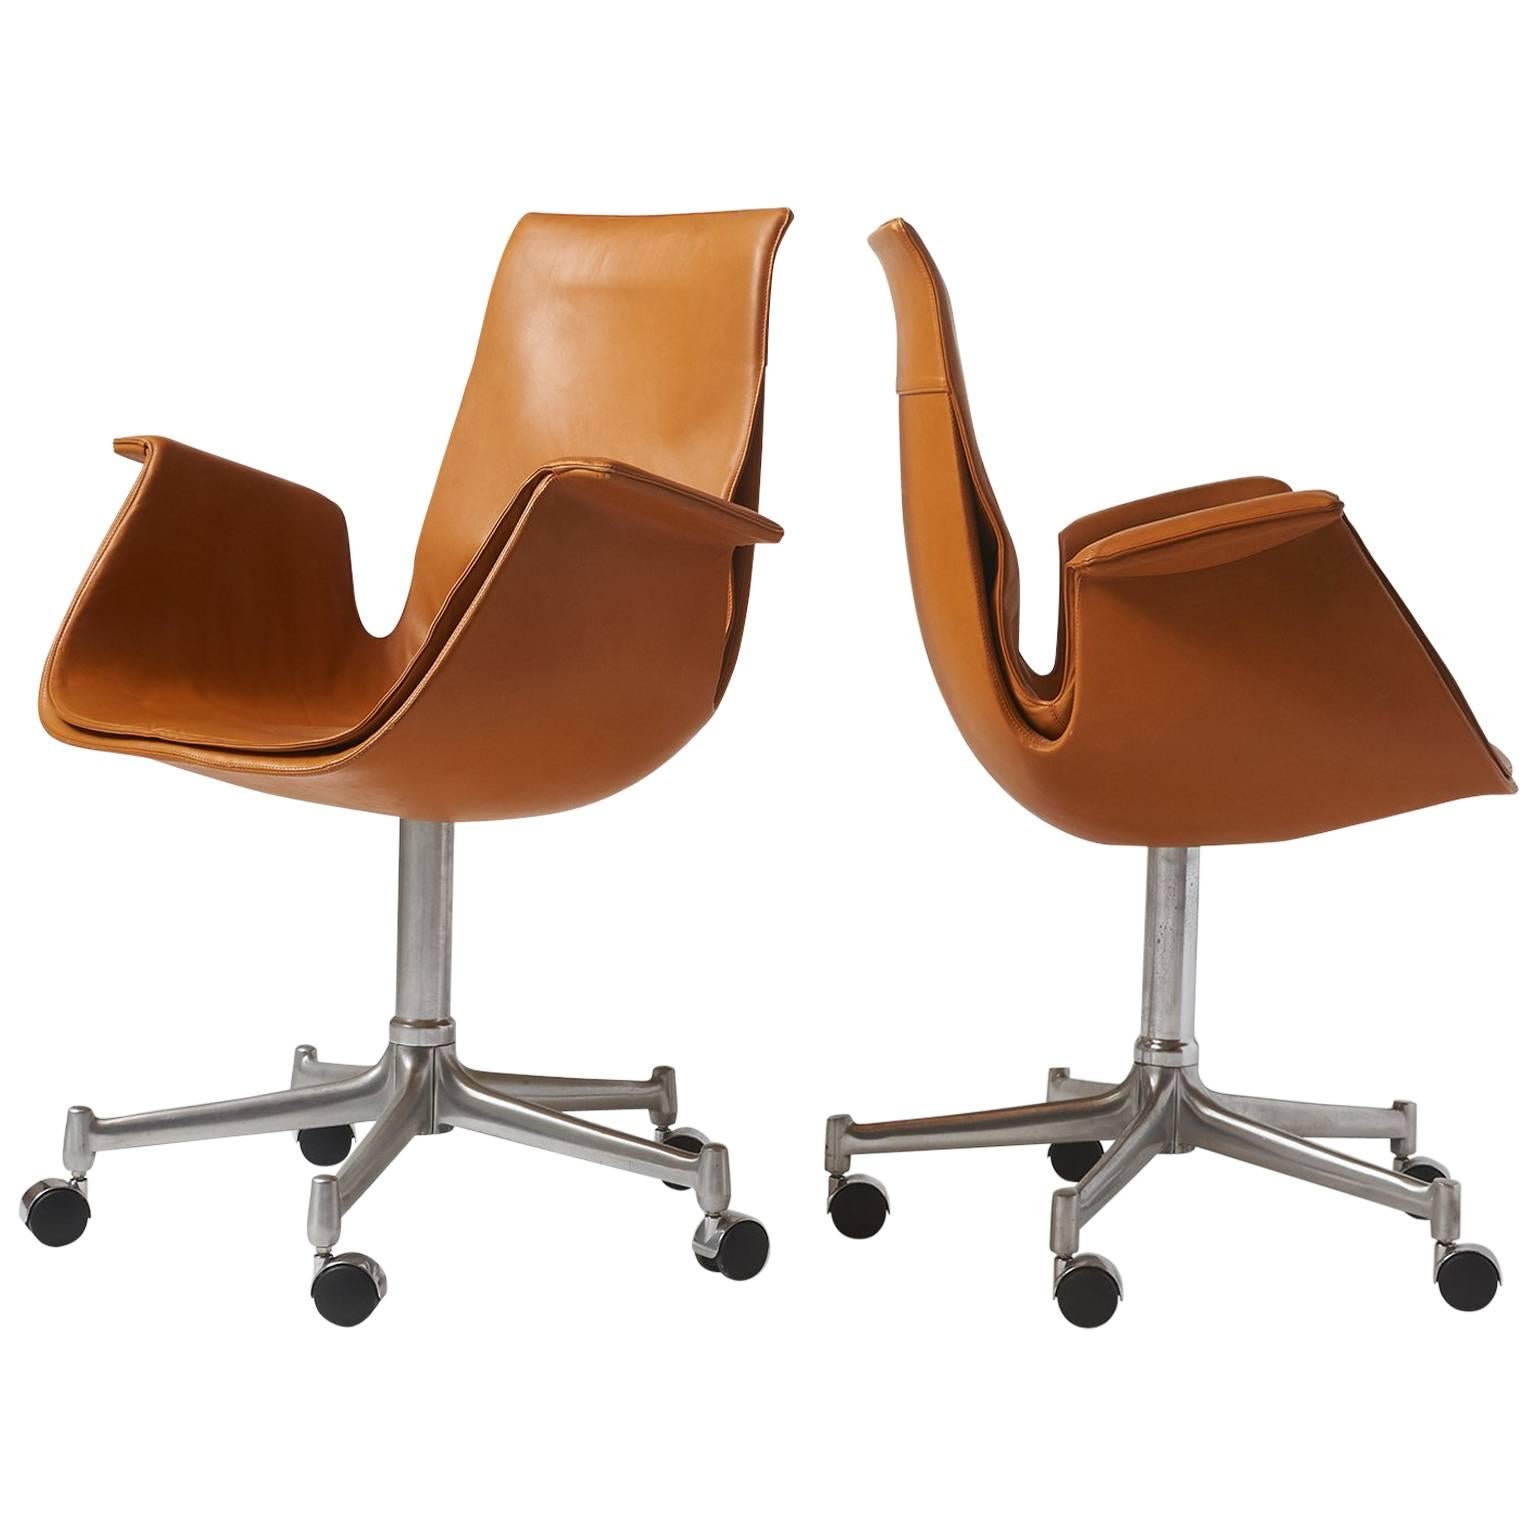 Pair of "Bird" Chairs by Preben Fabricius & Jorgen Kastholm